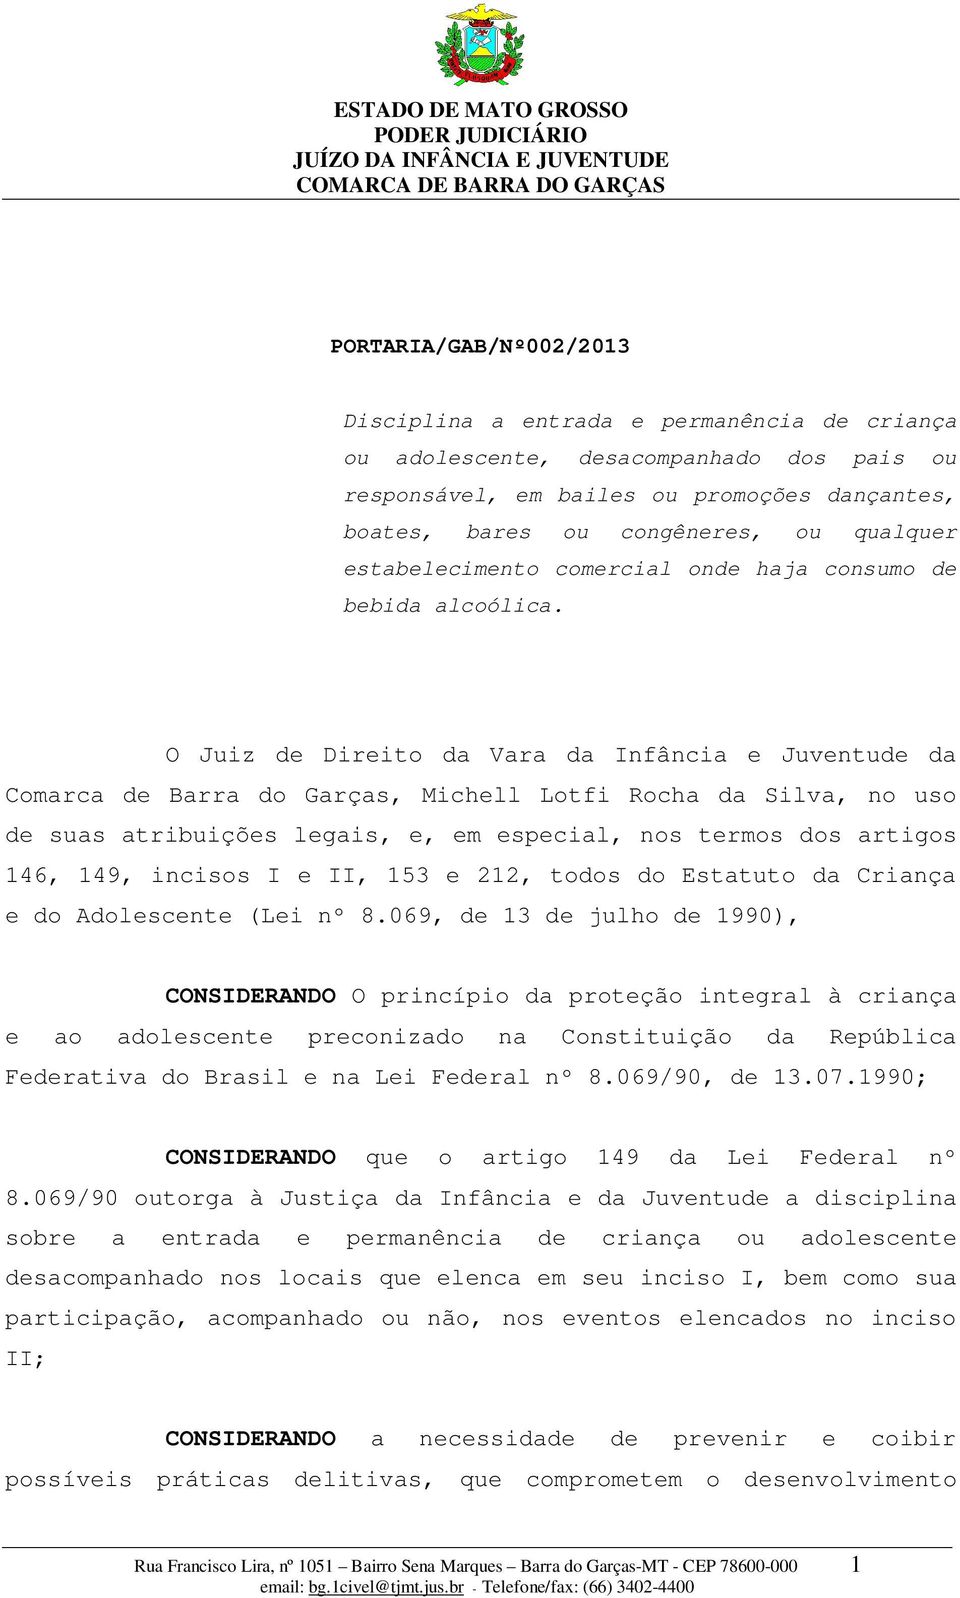 O Juiz de Direito da Vara da Infância e Juventude da Comarca de Barra do Garças, Michell Lotfi Rocha da Silva, no uso de suas atribuições legais, e, em especial, nos termos dos artigos 146, 149,